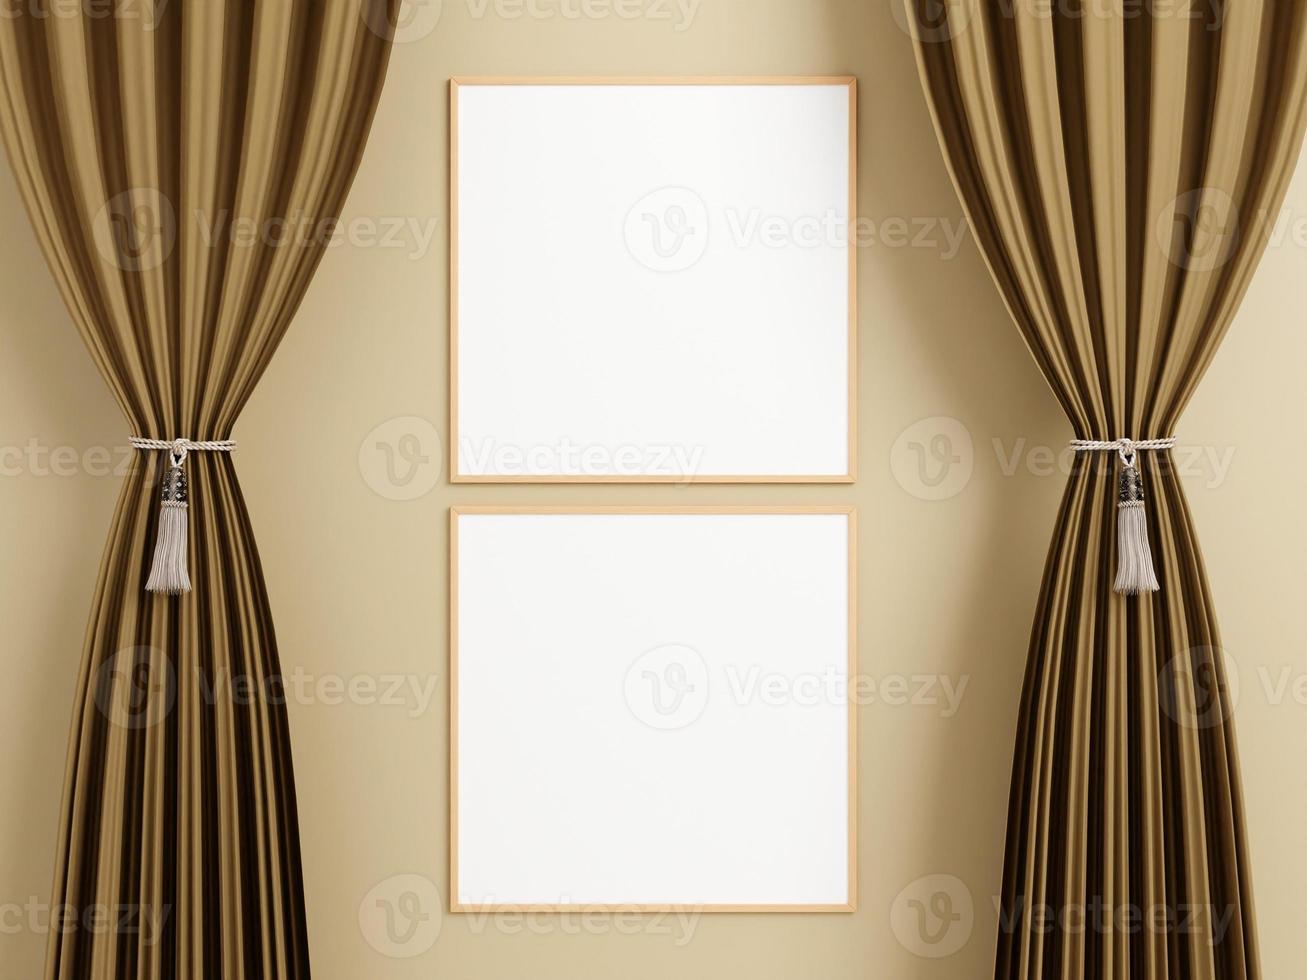 minimalistisches quadratisches holzplakat oder fotorahmenmodell an der wand zwischen dem vorhang. foto